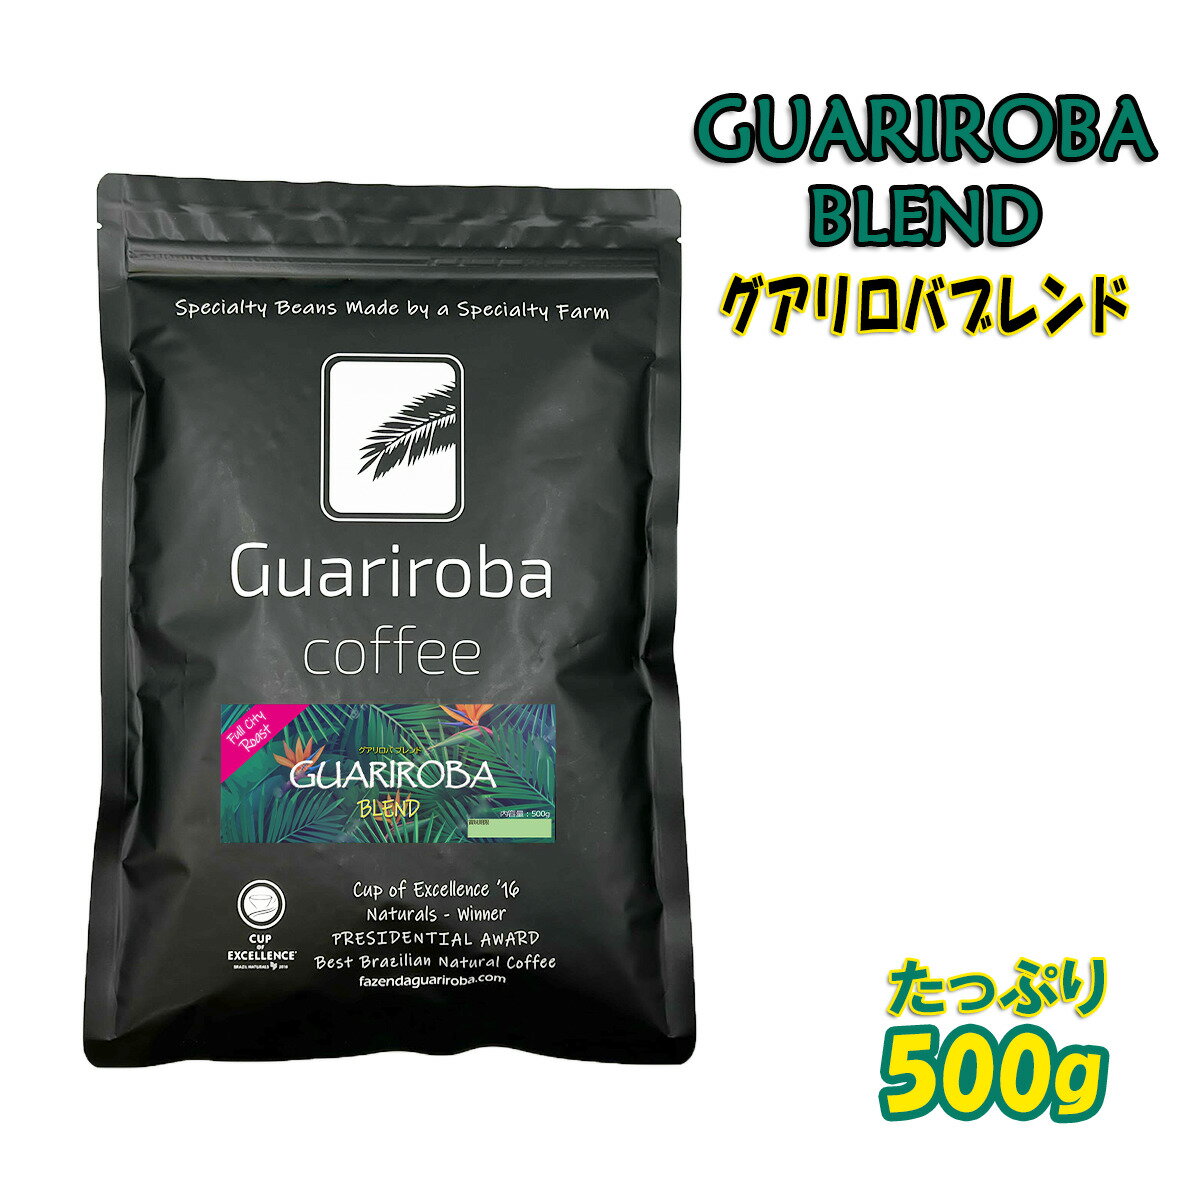 スペシャルティコーヒー豆 GUARIROBA B